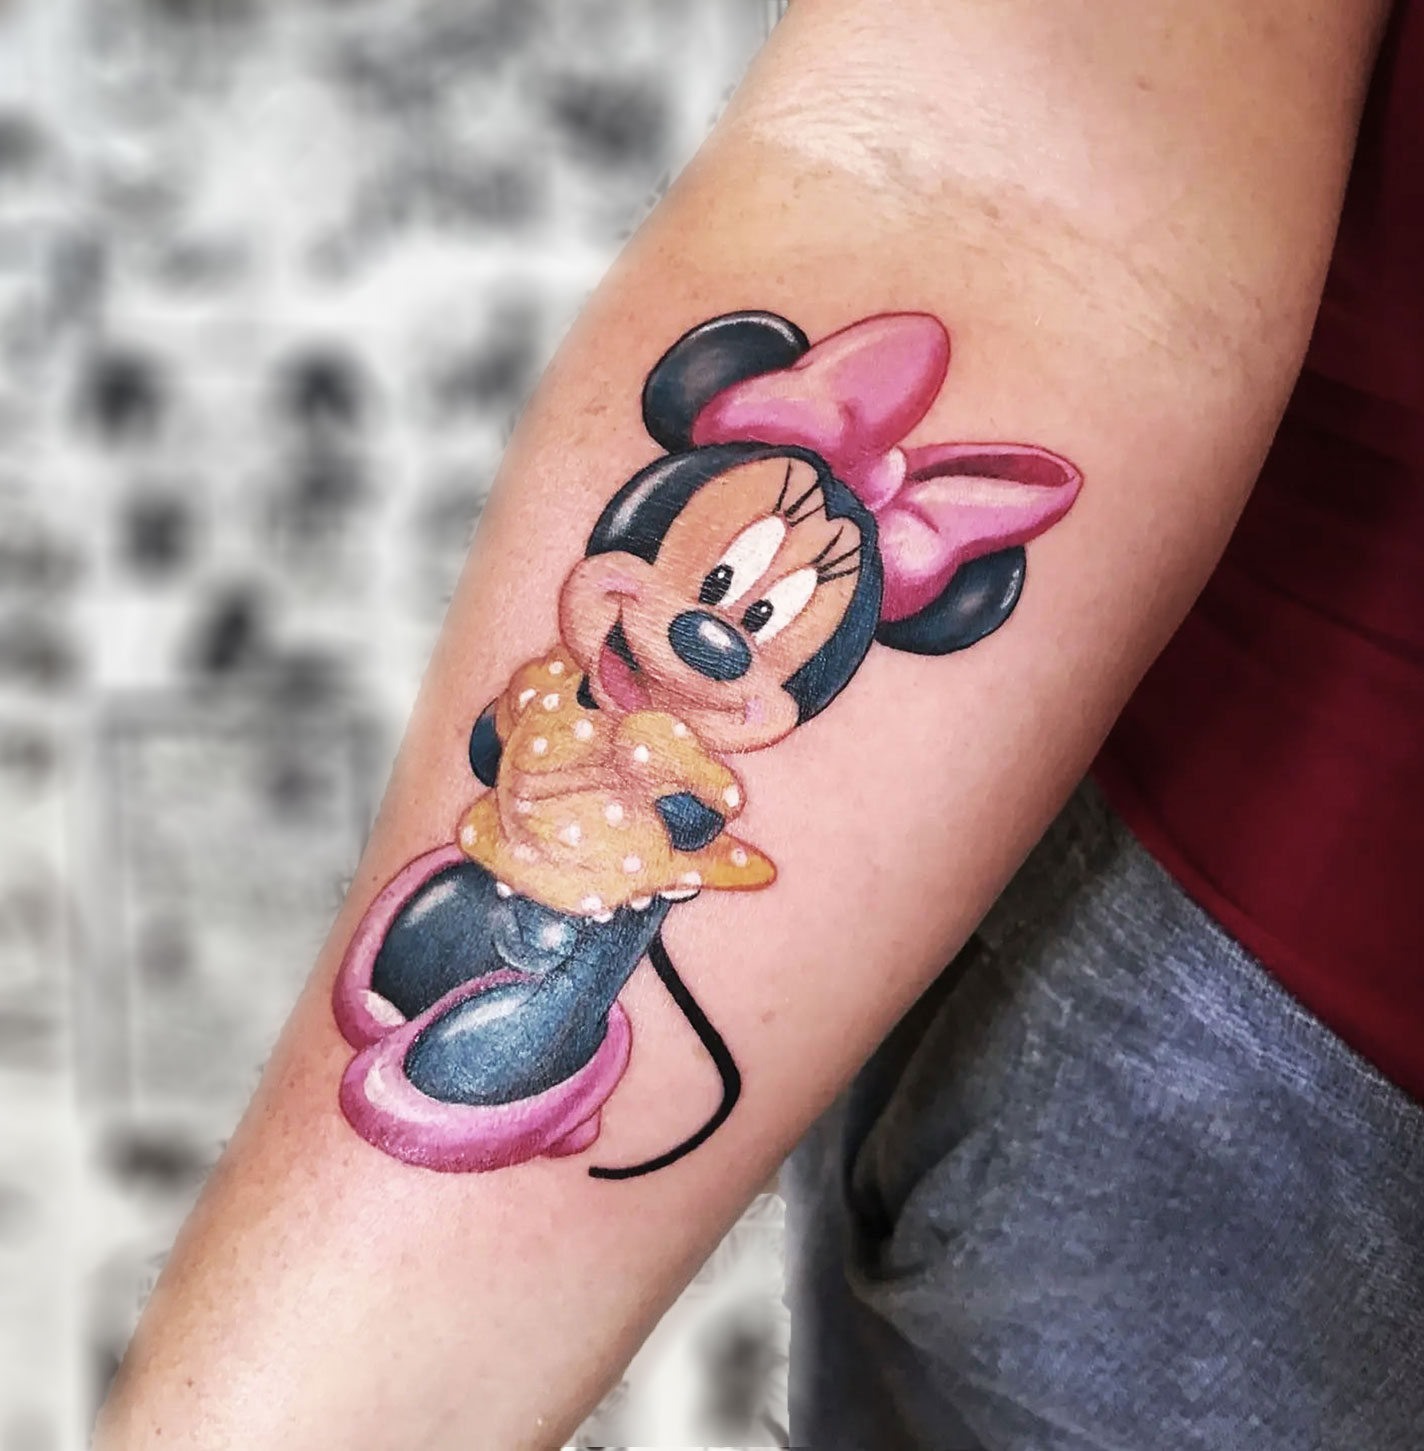 Tatuagem de Minnie